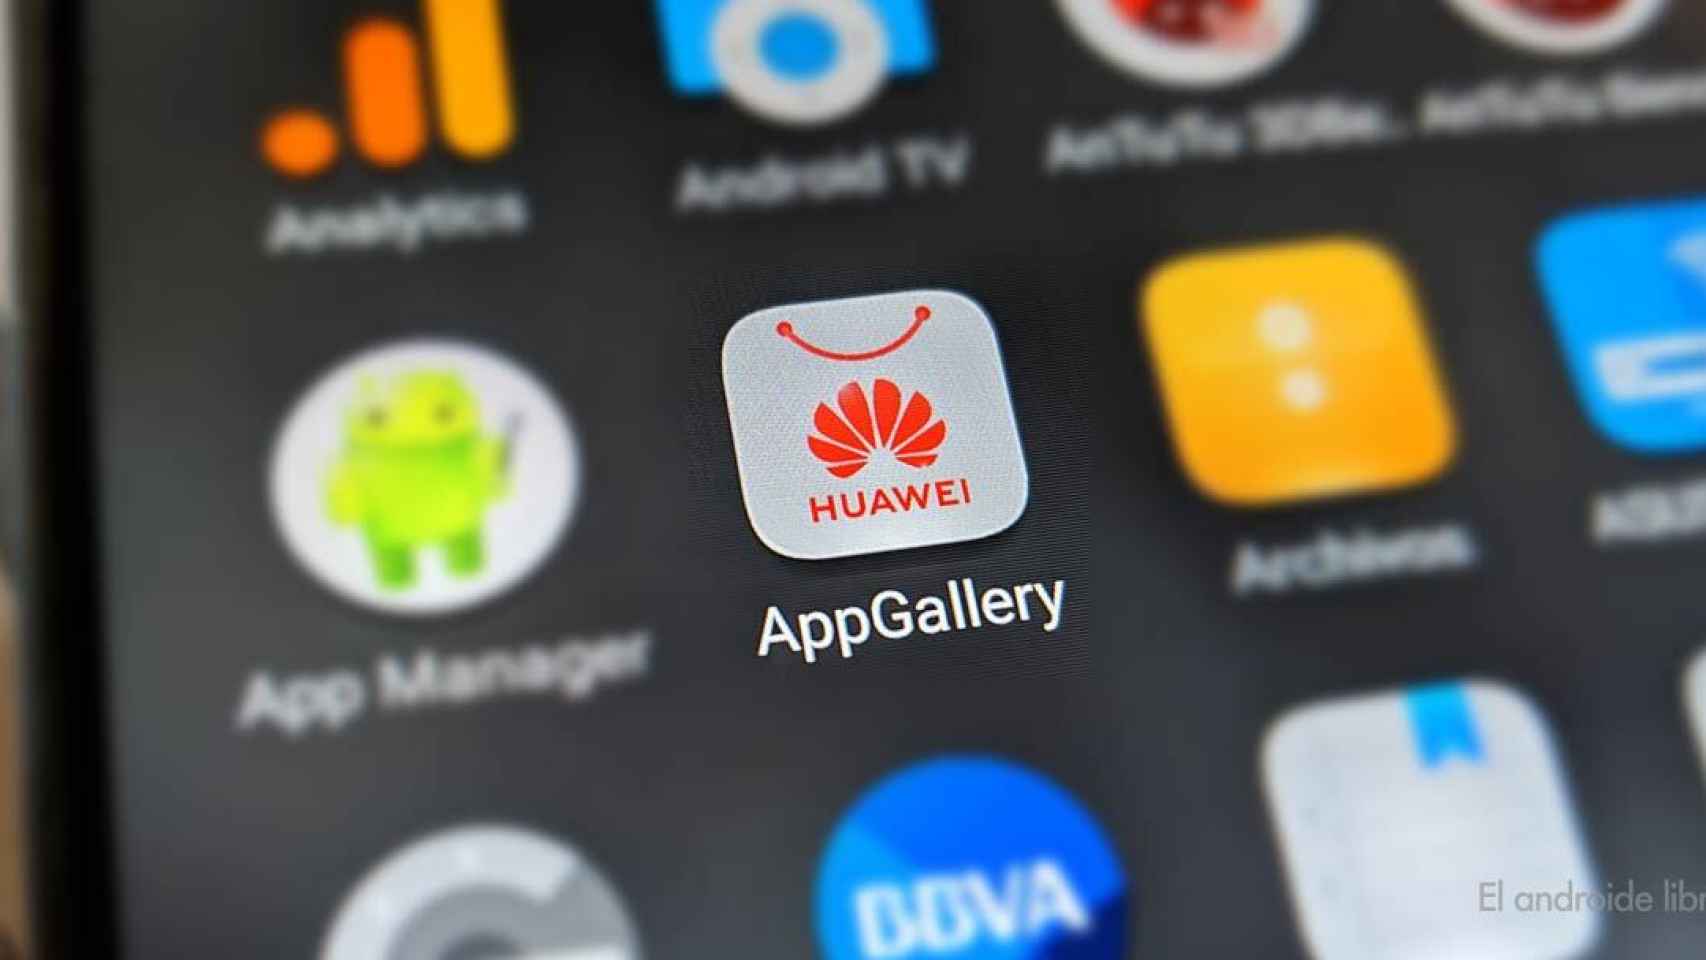 Huawei actualiza el diseño de la AppGallery para hacer más fácil descubrir nuevas apps